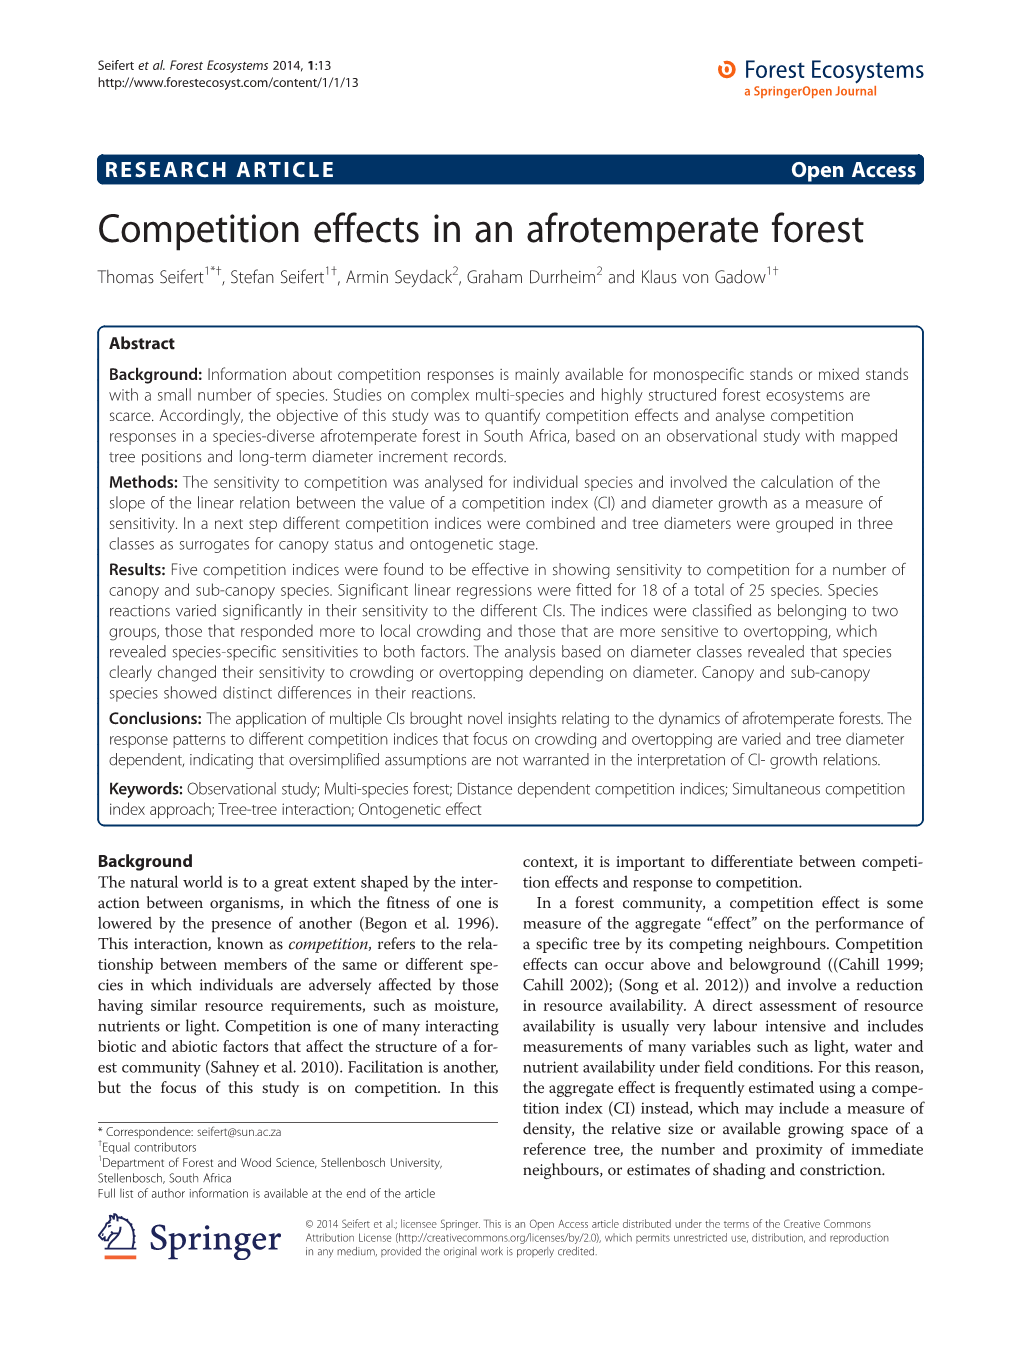 Competition Effects in an Afrotemperate Forest Thomas Seifert1*†, Stefan Seifert1†, Armin Seydack2, Graham Durrheim2 and Klaus Von Gadow1†